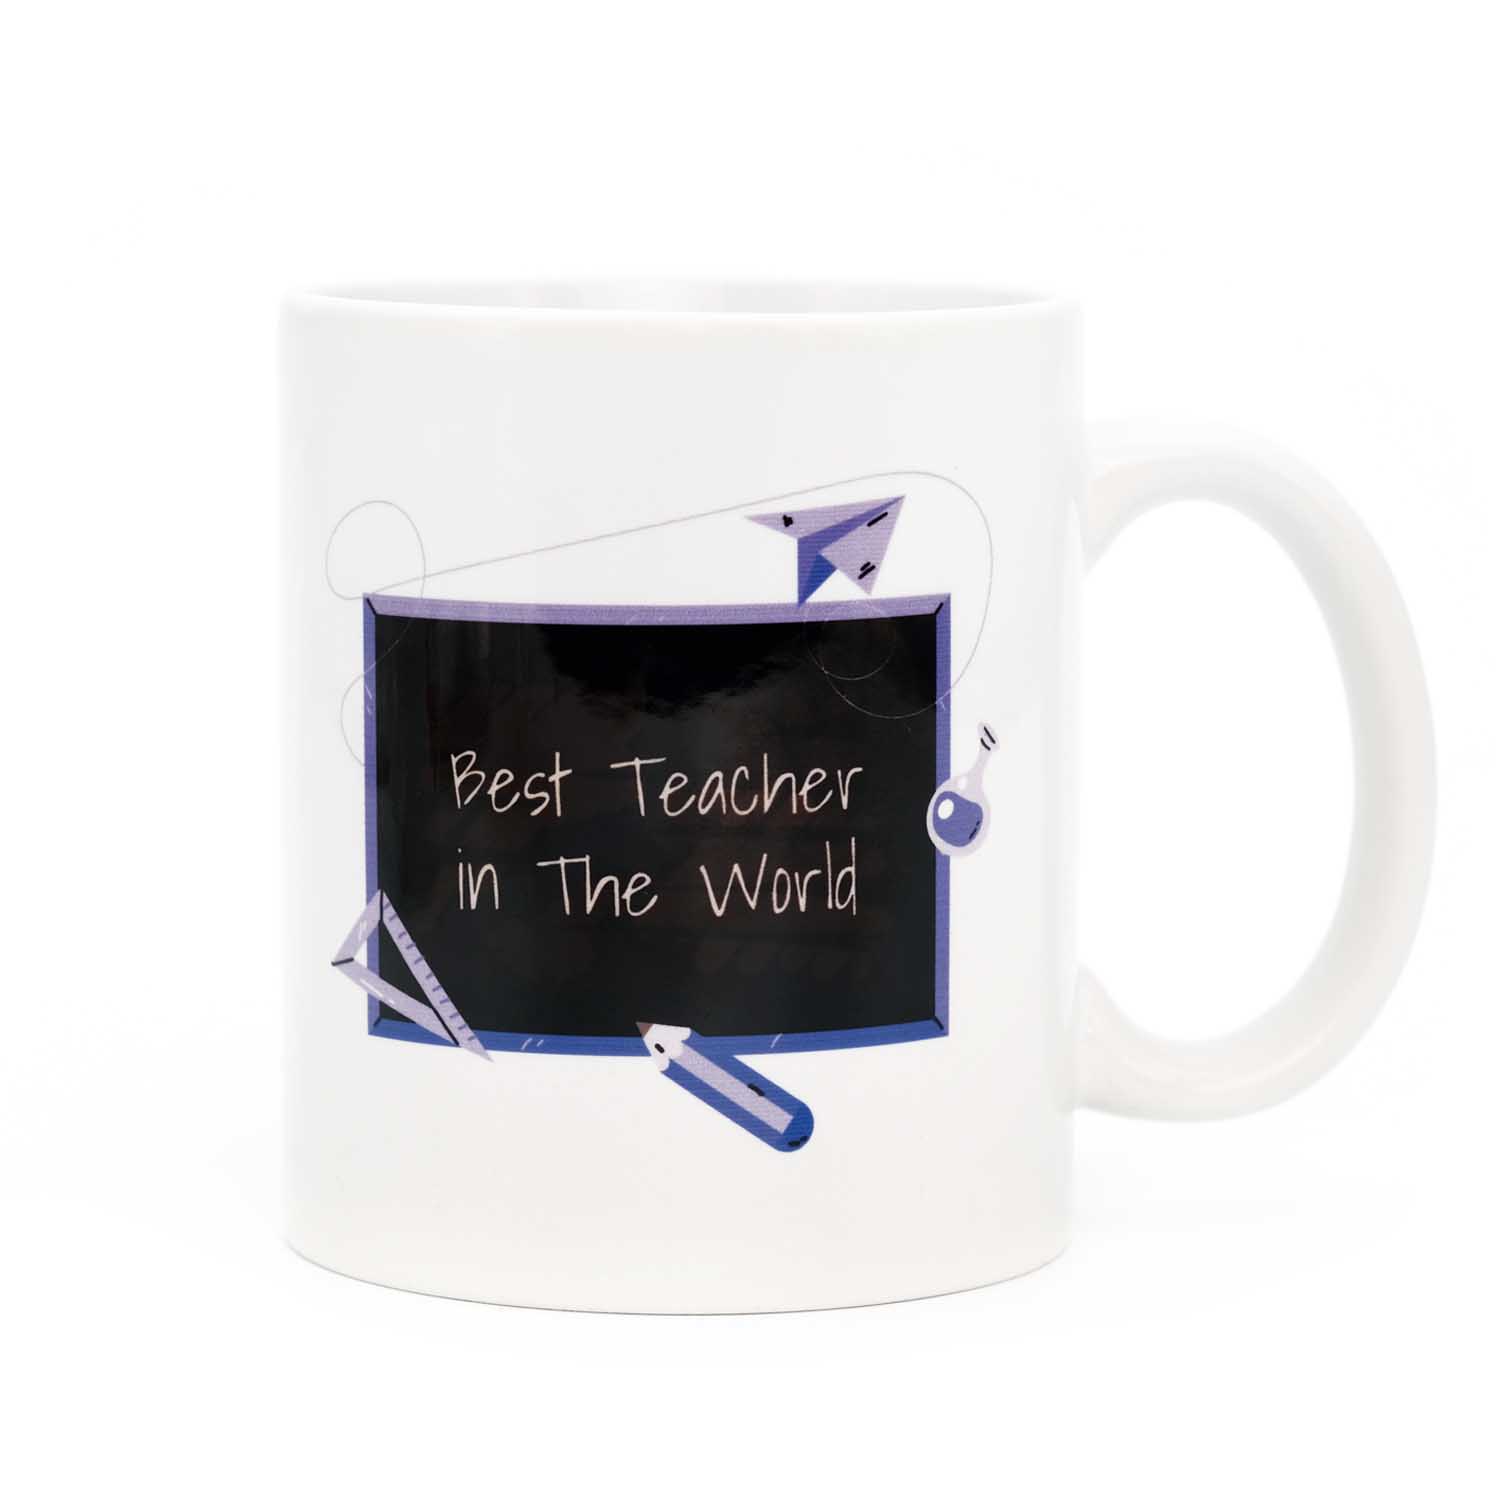 Best Teacher in The World - Kara Tahta Baskılı Kupa